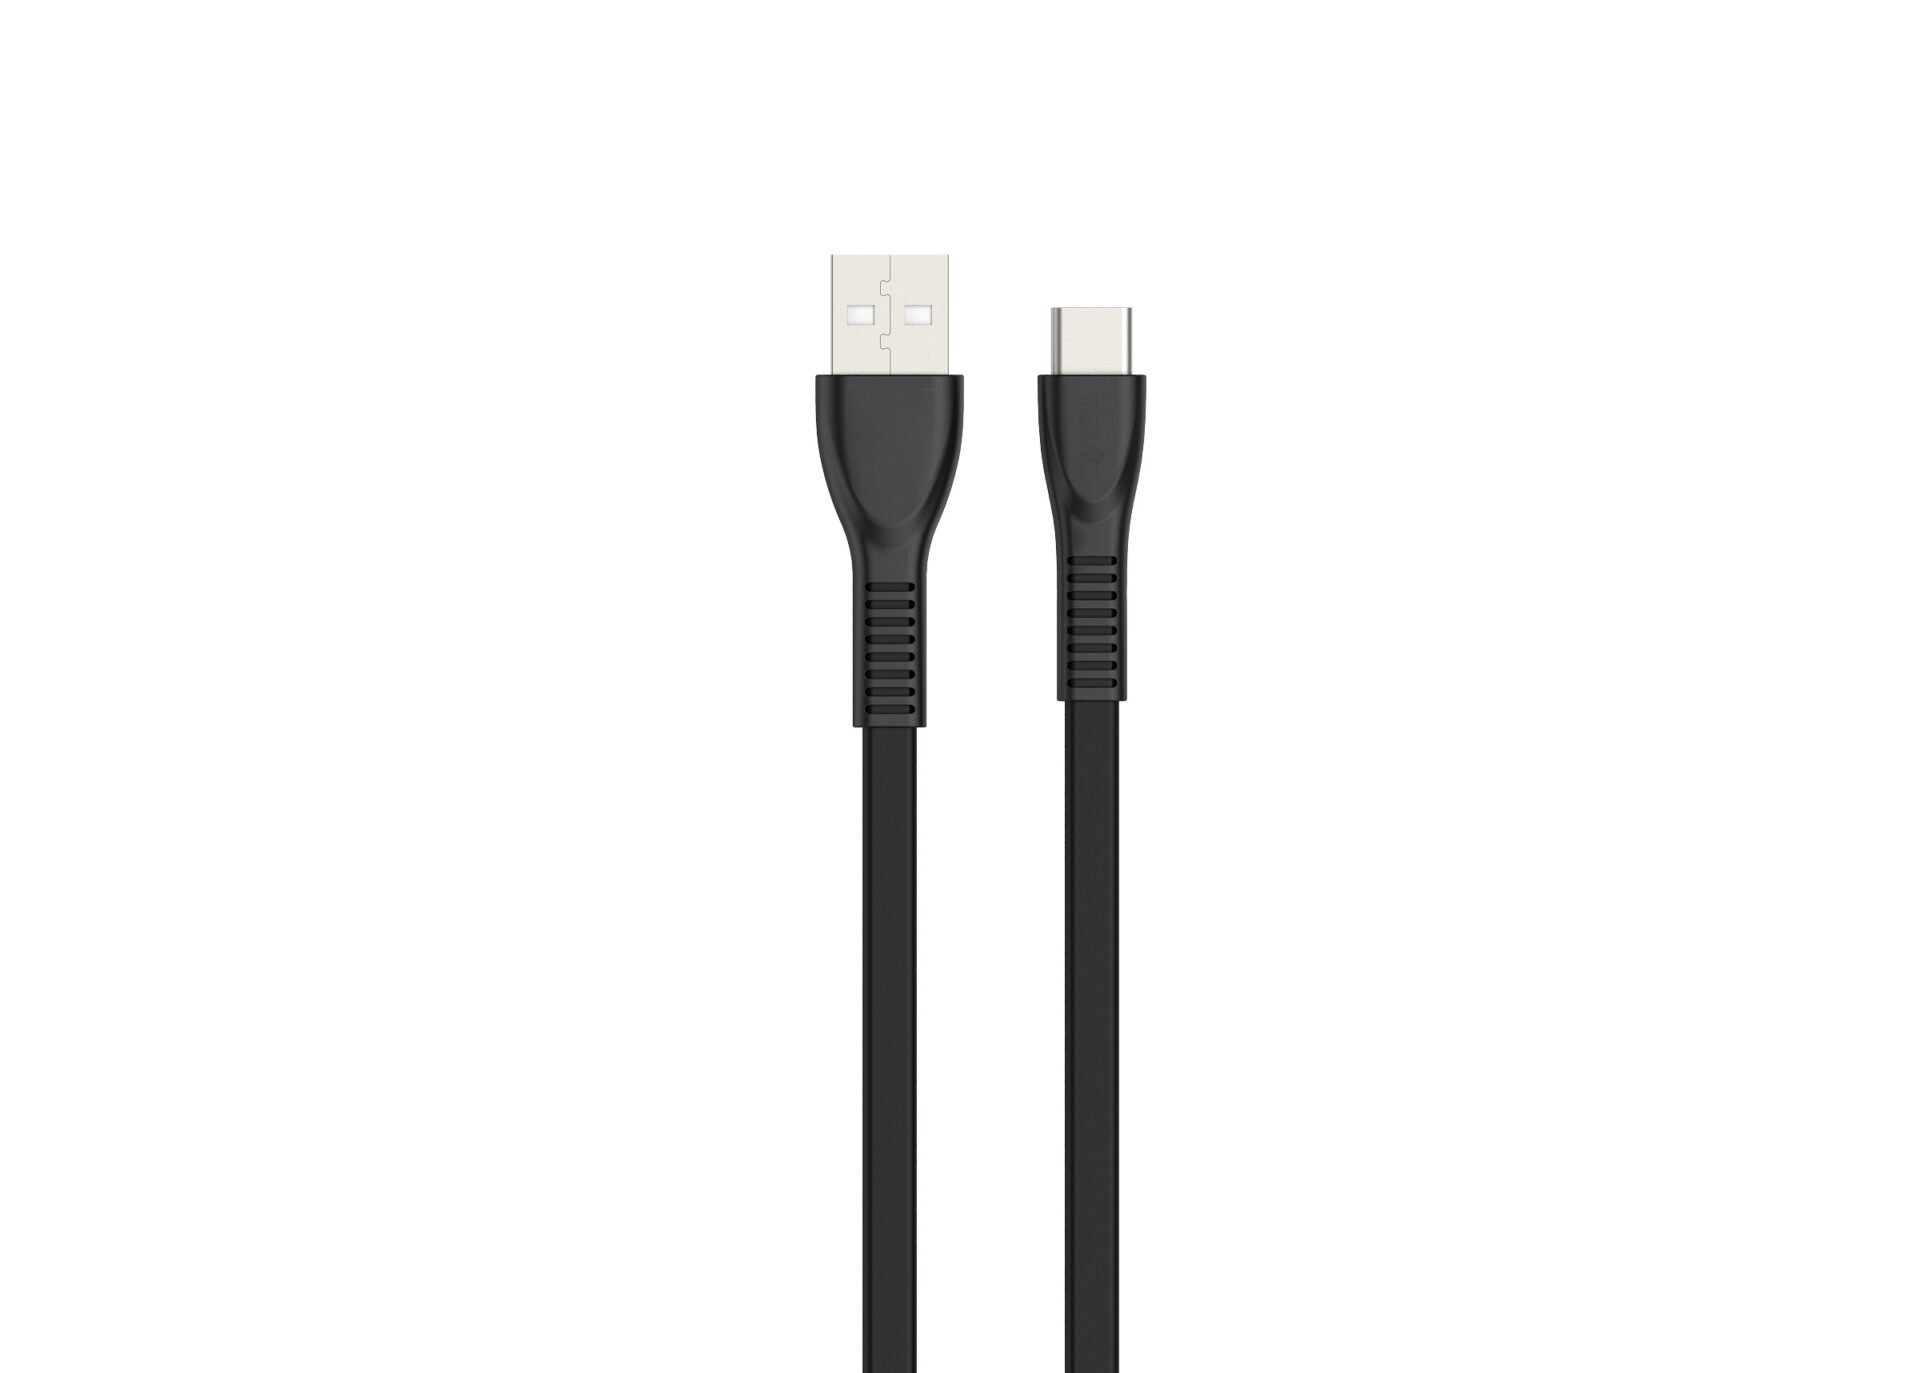 Billede af Havit USB 2.0 USB Type-C kabel i sort hos COMTEK.DK